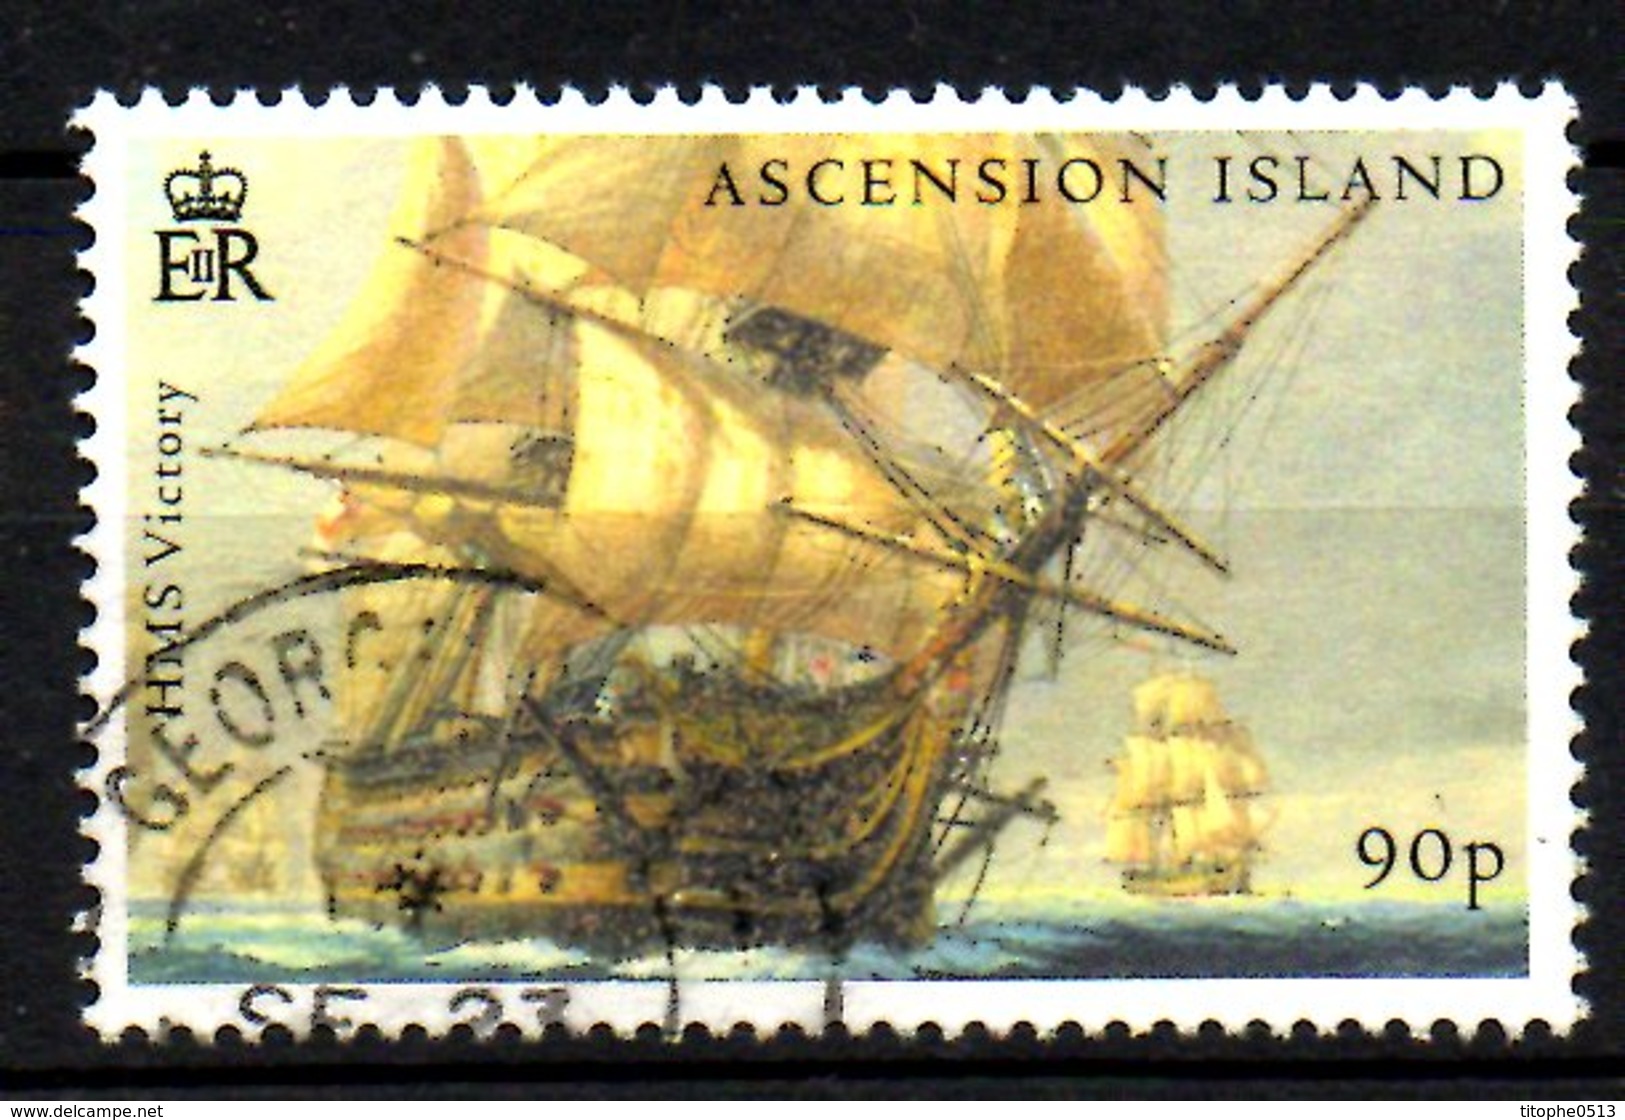 ASCENSION. Timbre Oblitéré De 2005. Bataille De Trafalgar/HMS Victory. - Napoleon